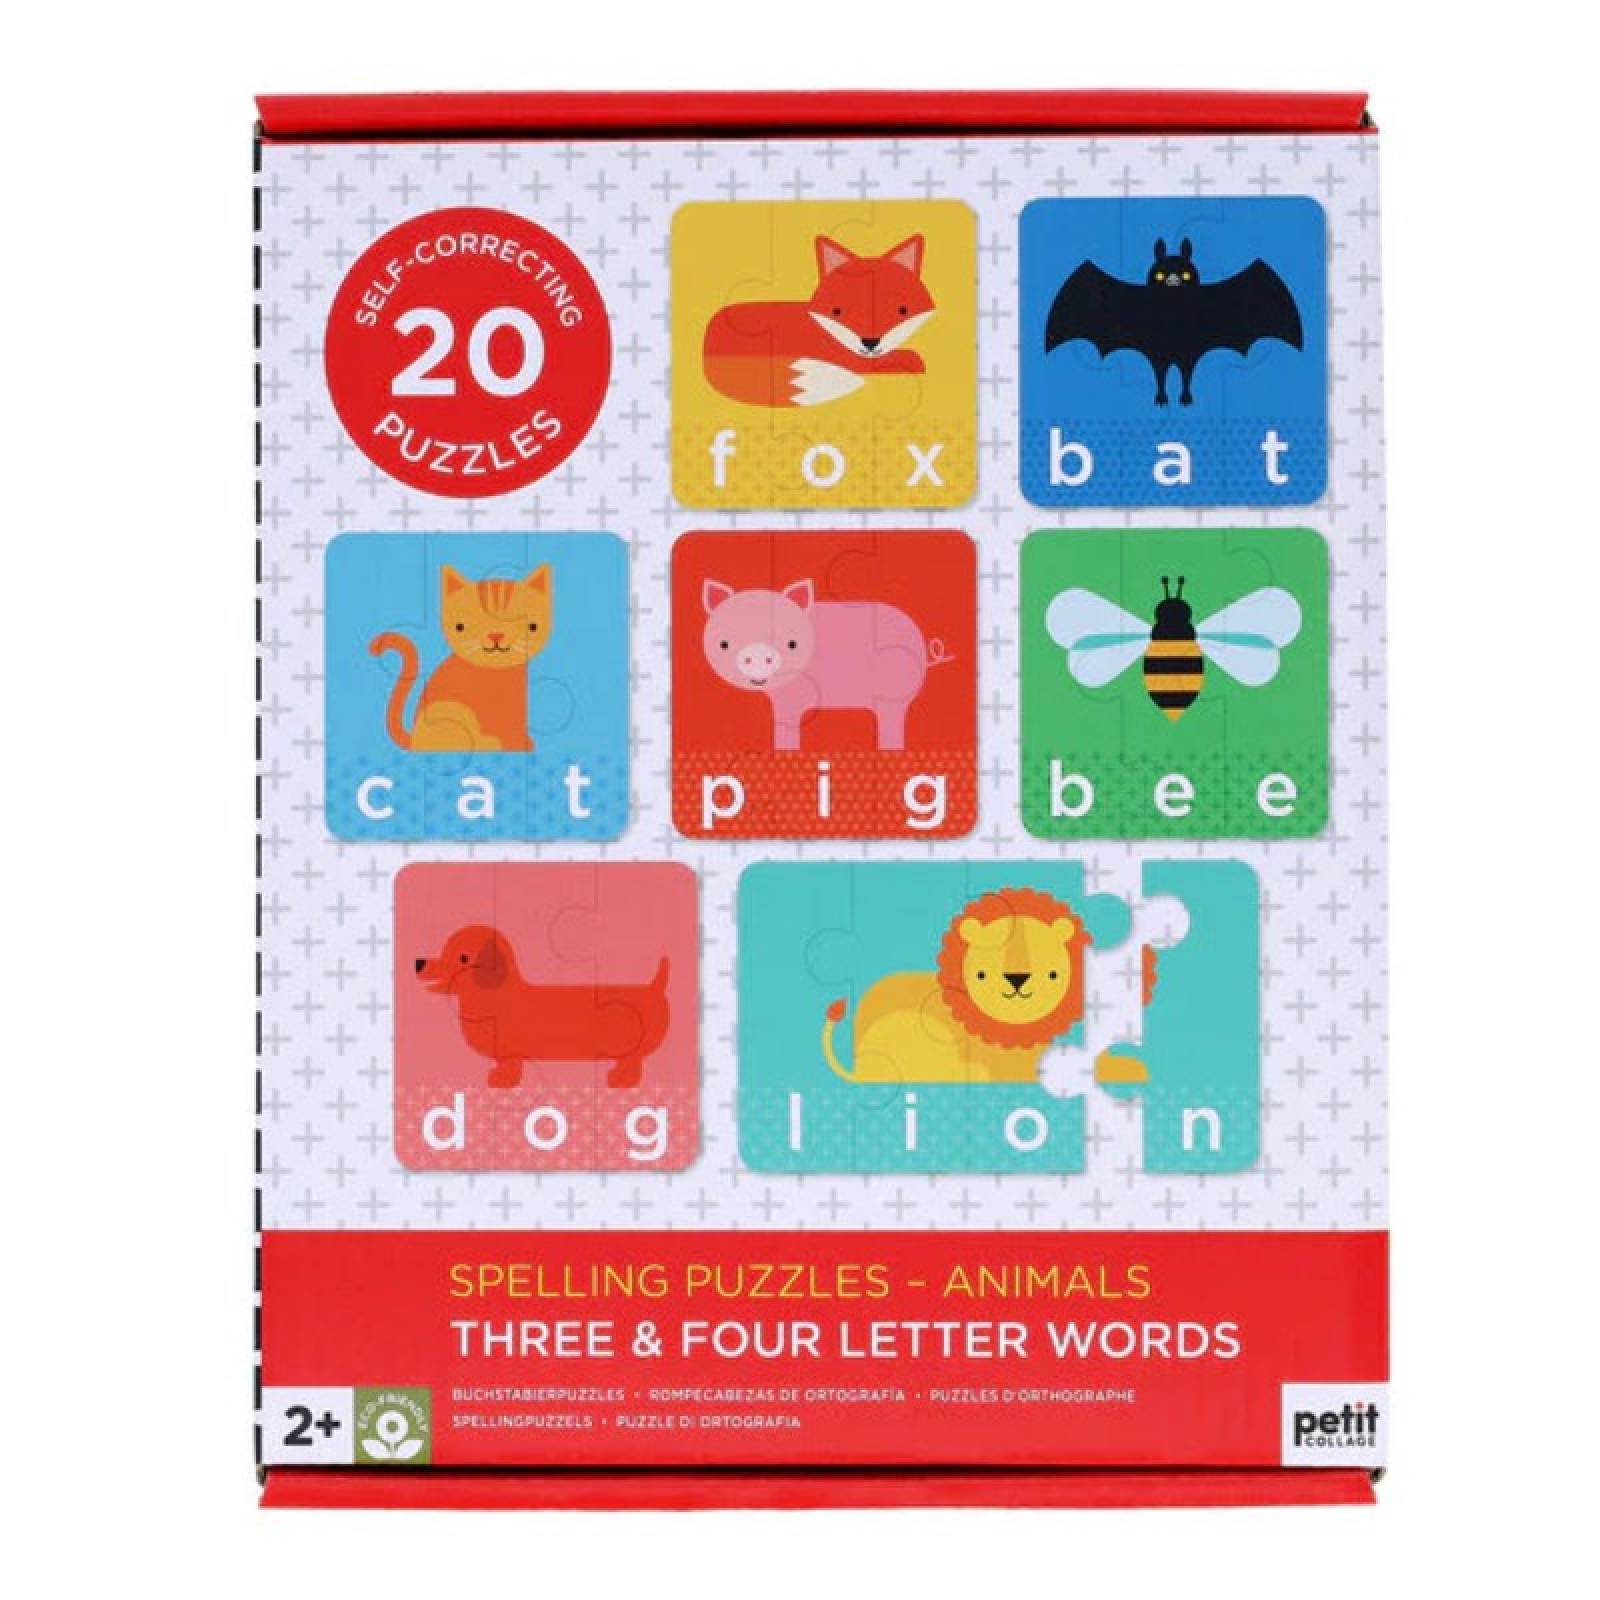 Spelling Puzzles: Animals - 20 Puzzles 2+